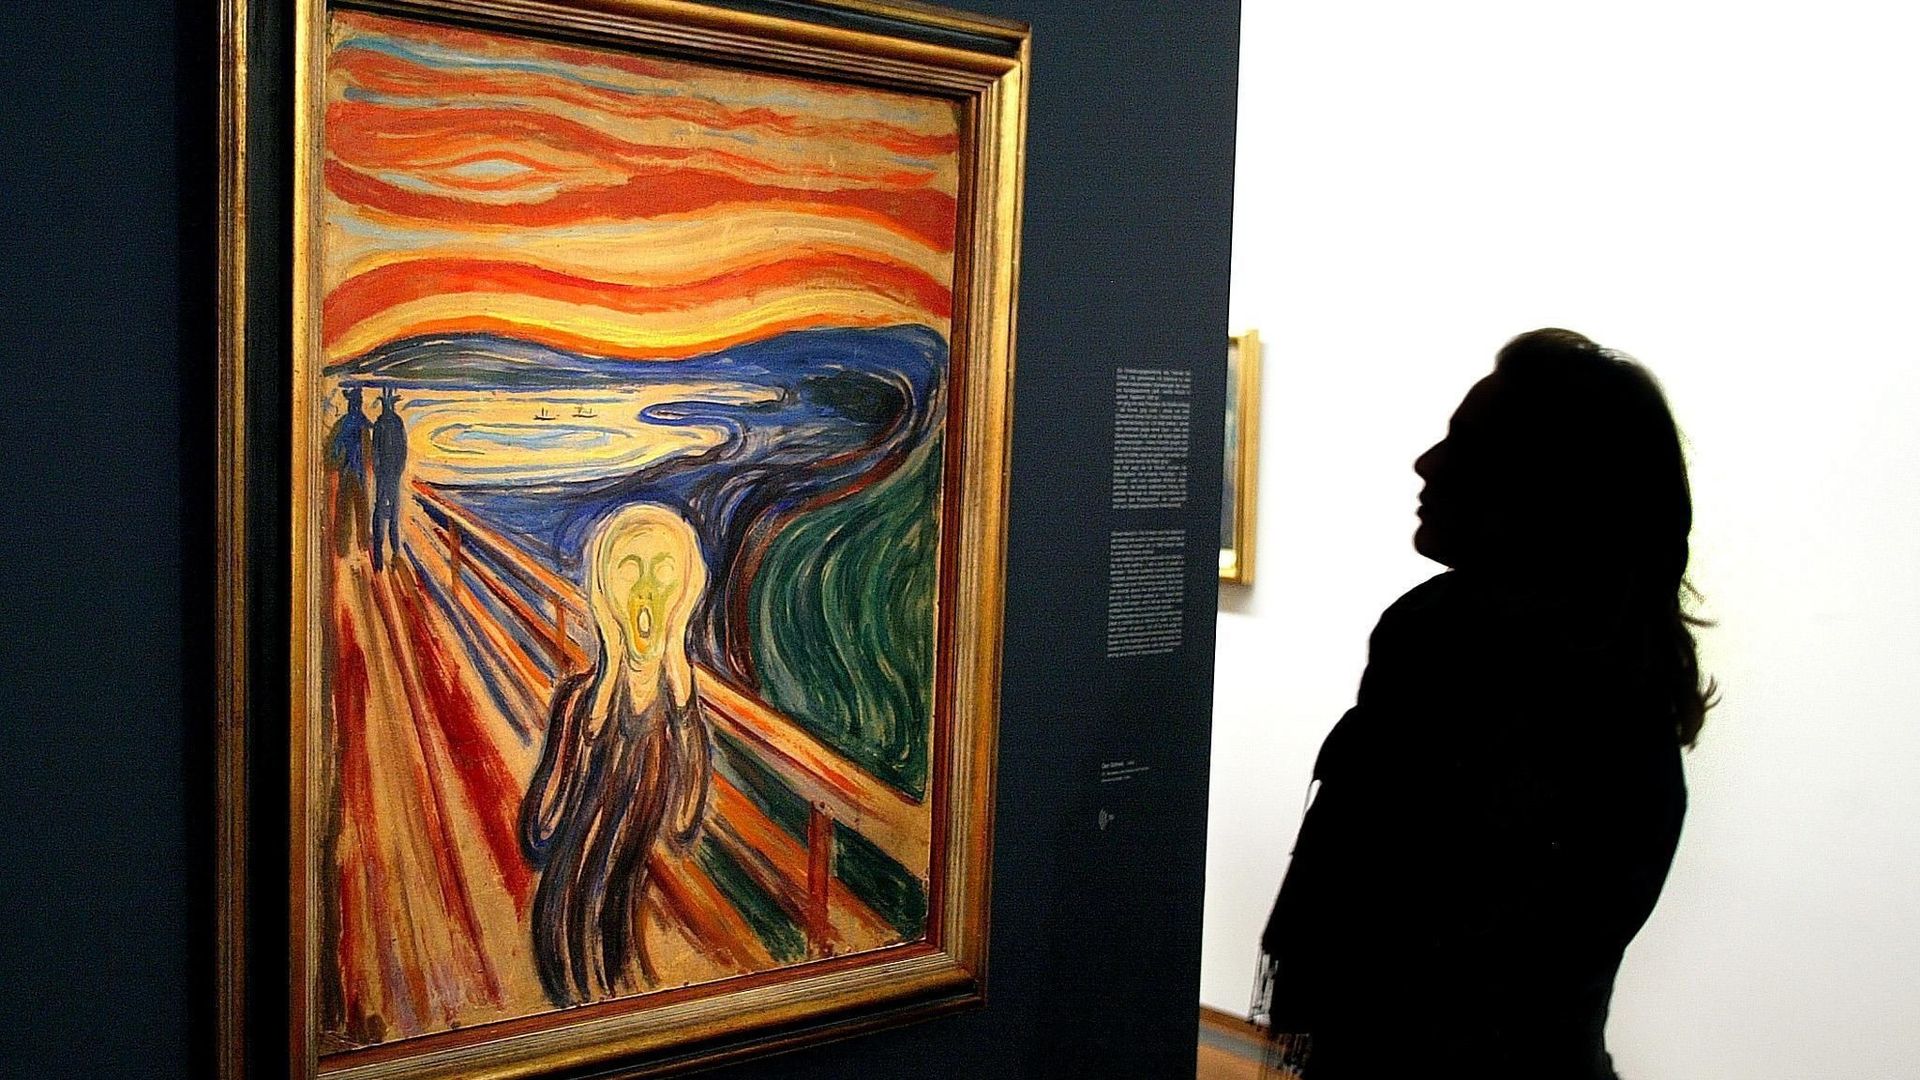 Des nuages stratosphériques derrière "Le Cri" de Munch?